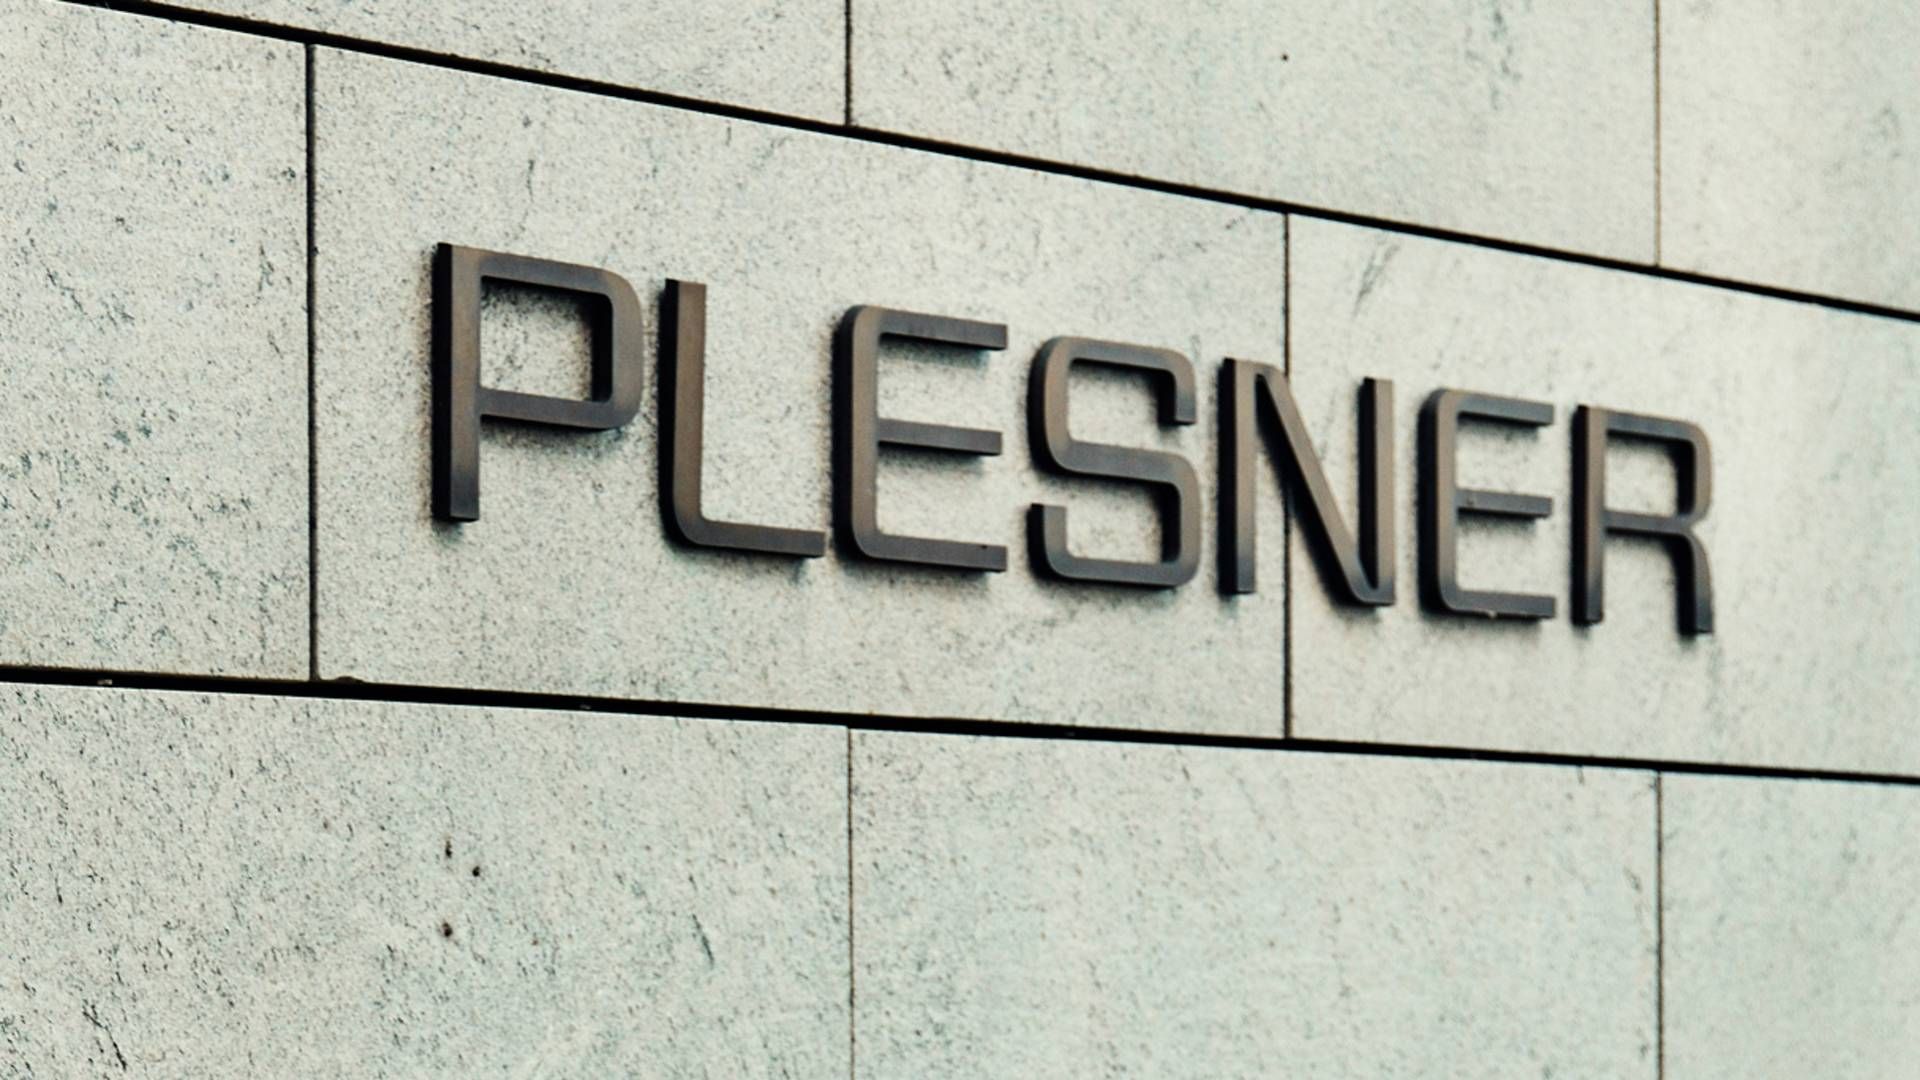 Plesner er højest placerede advokatfirma i ny imagemåling. | Foto: Jeppe Carlsen